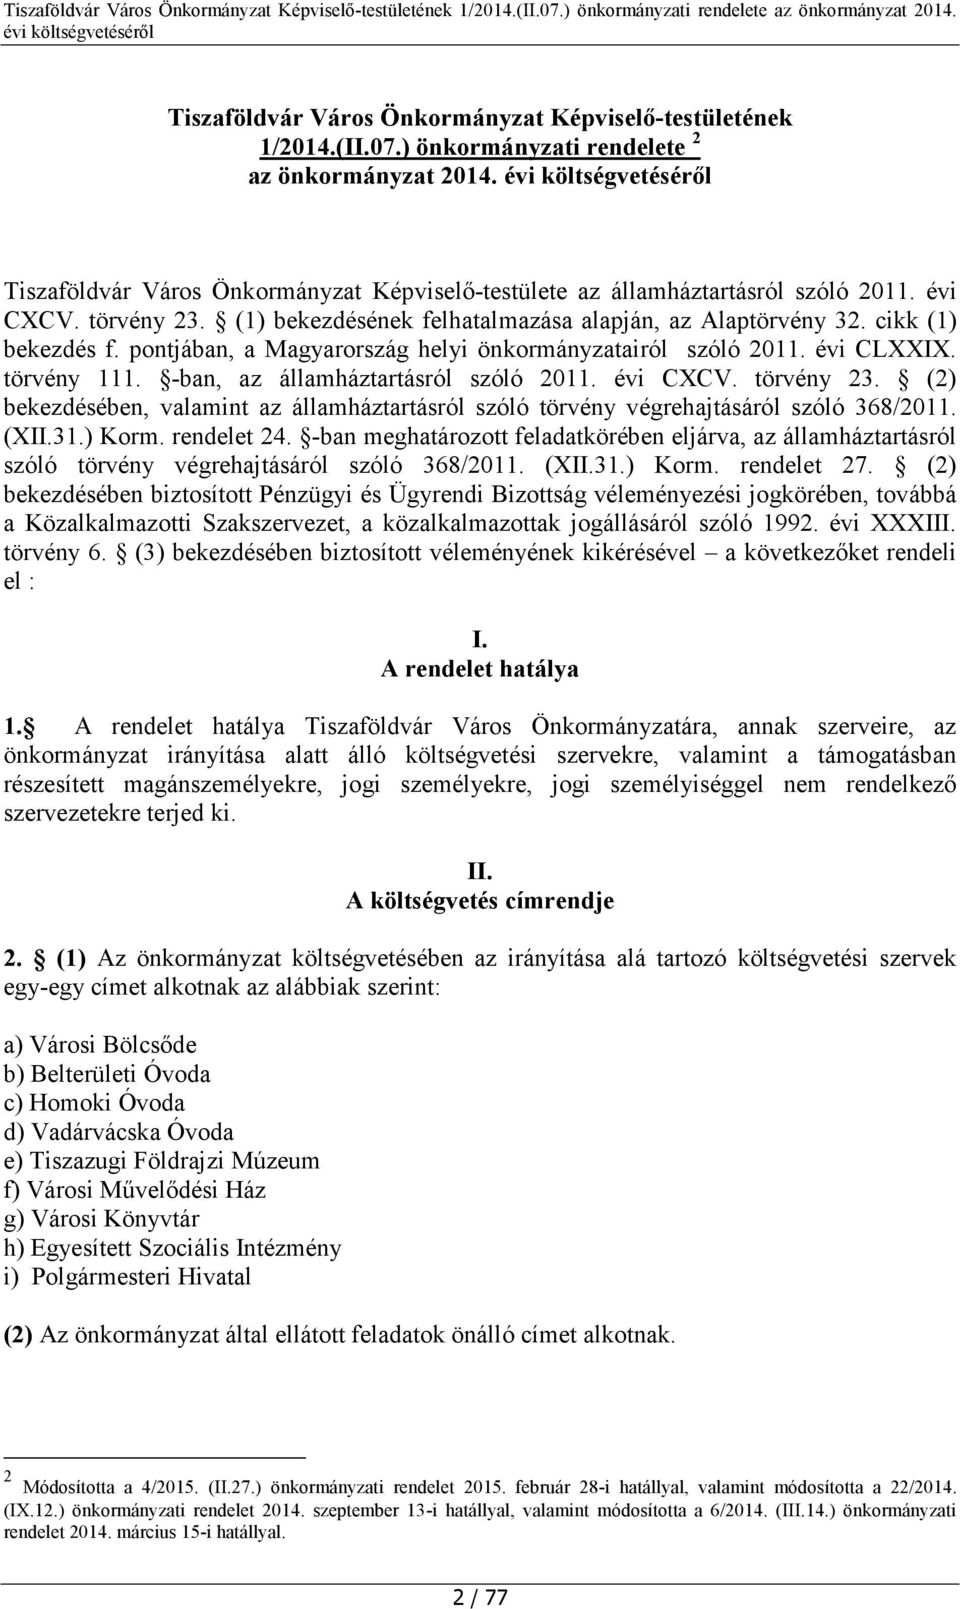 (1) bekezdésének felhatalmazása alapján, az Alaptörvény 32. cikk (1) bekezdés f. pontjában, a Magyarország helyi önkormányzatairól szóló 2011. évi CLXXIX. törvény 111.